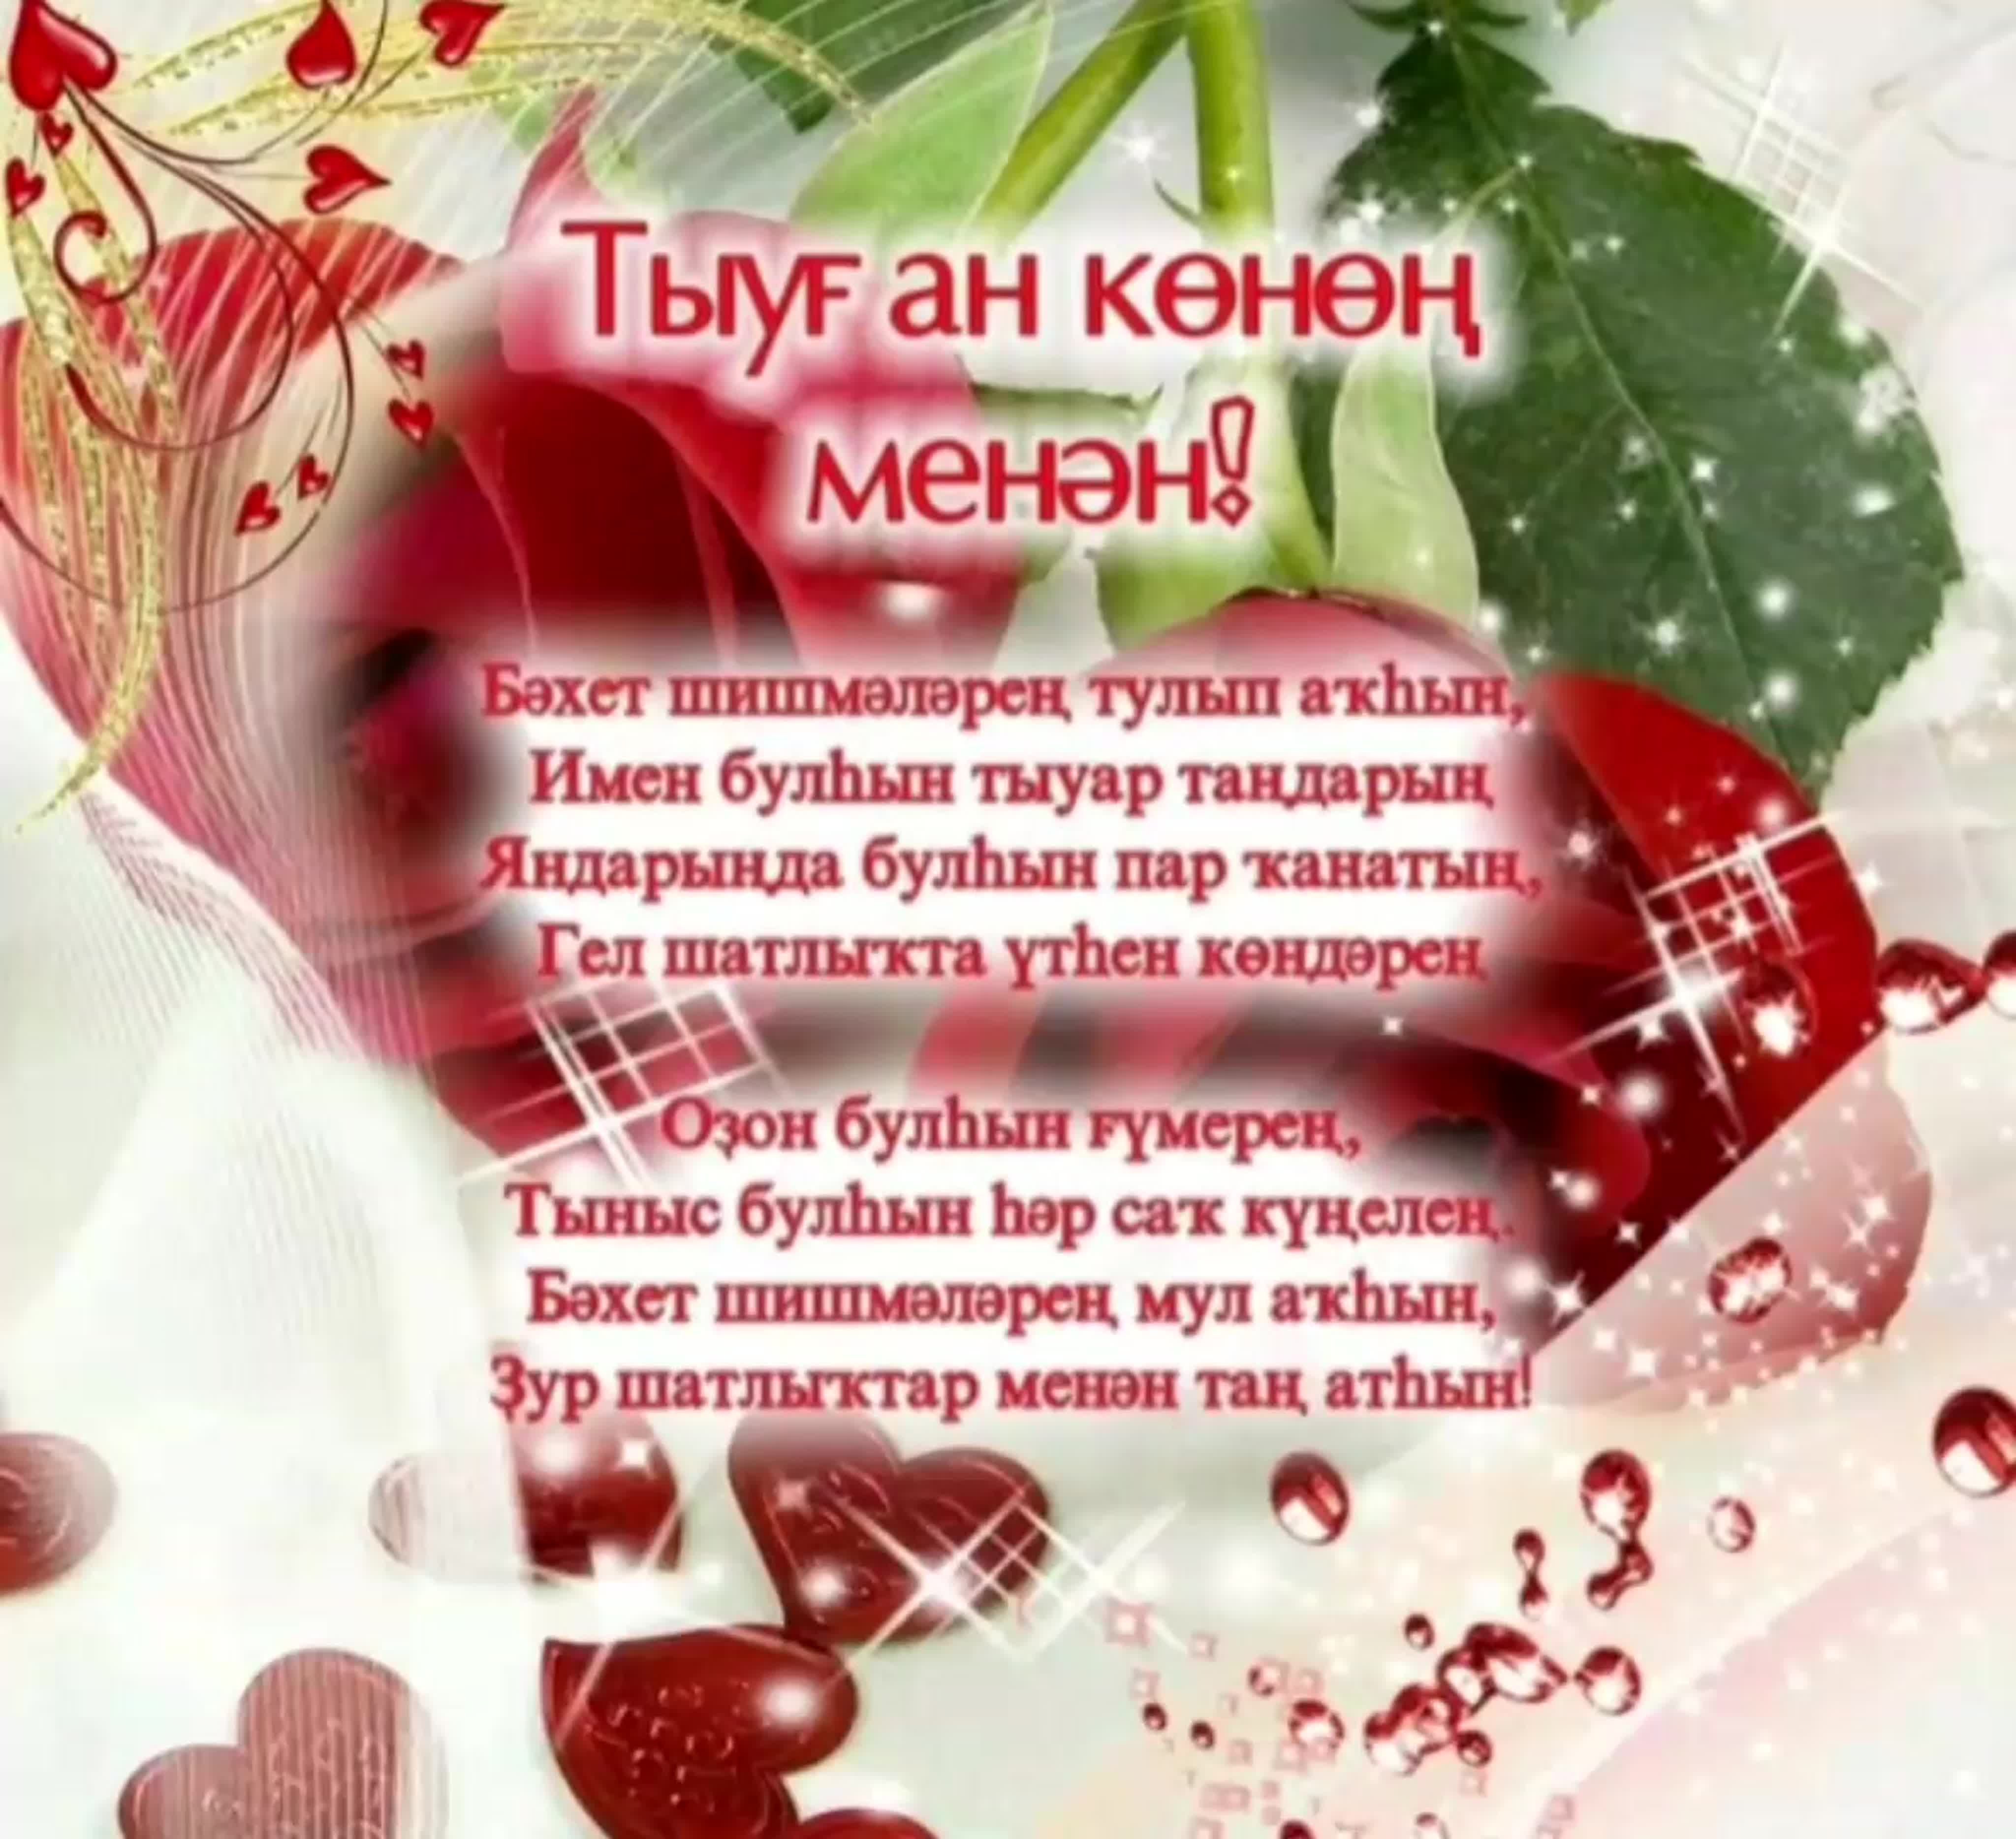 Поздравление с днем рождения на таджикском. Открытка с юбилеем на башкирском языке. Поздравления с днём рождения на башкирском языке. Поздравление с юбилеем на башкирском языке. Поздравления с днём на башкирском языке.